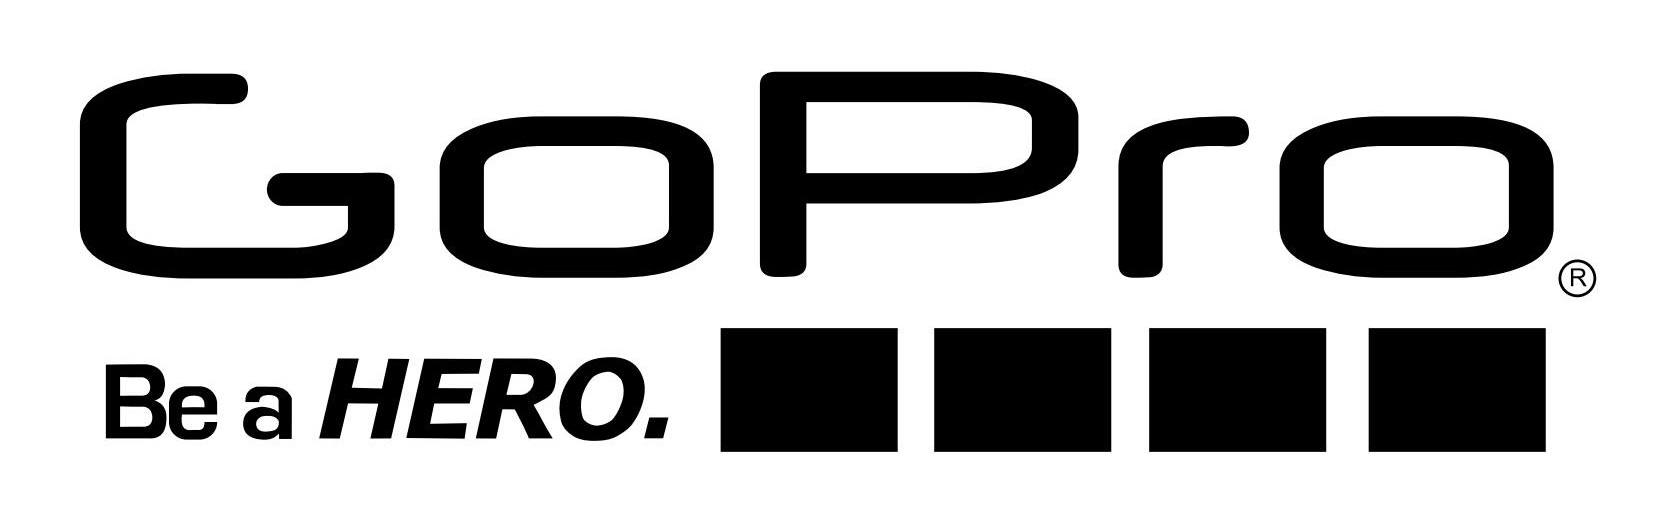 Gopro Logo Free Download